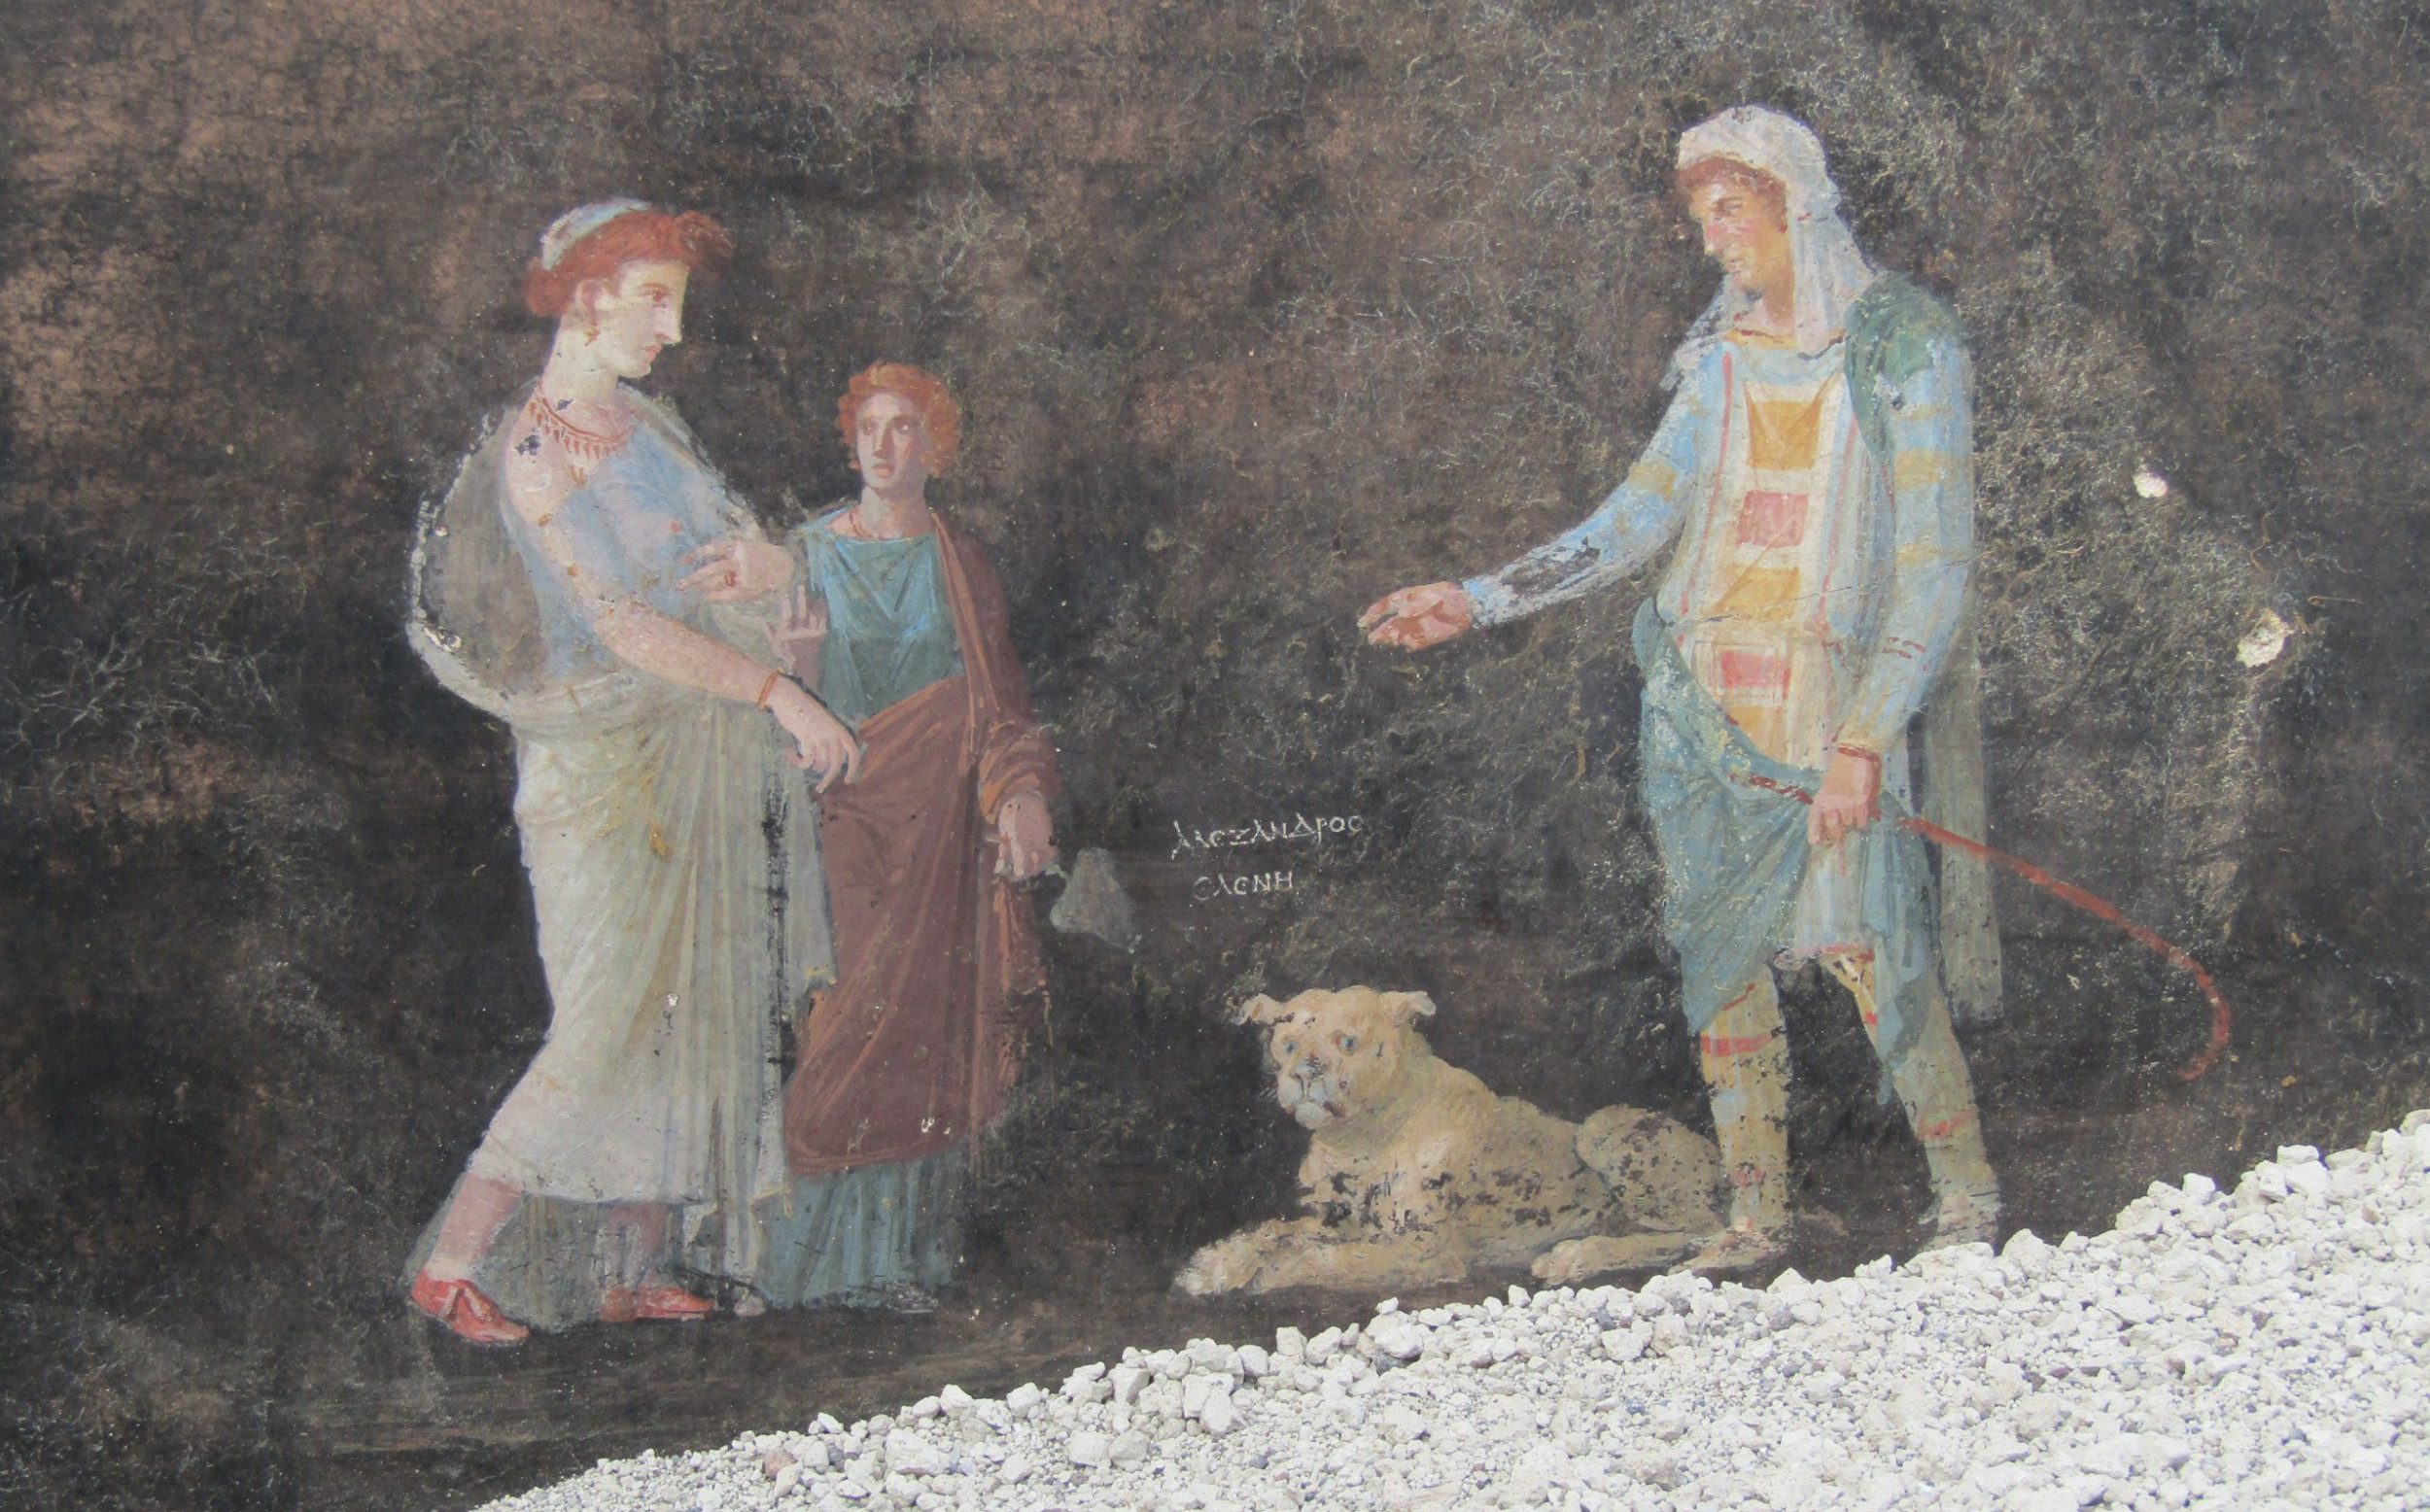 helen of troy: pompeii excavators unearth treasure chest of frescos